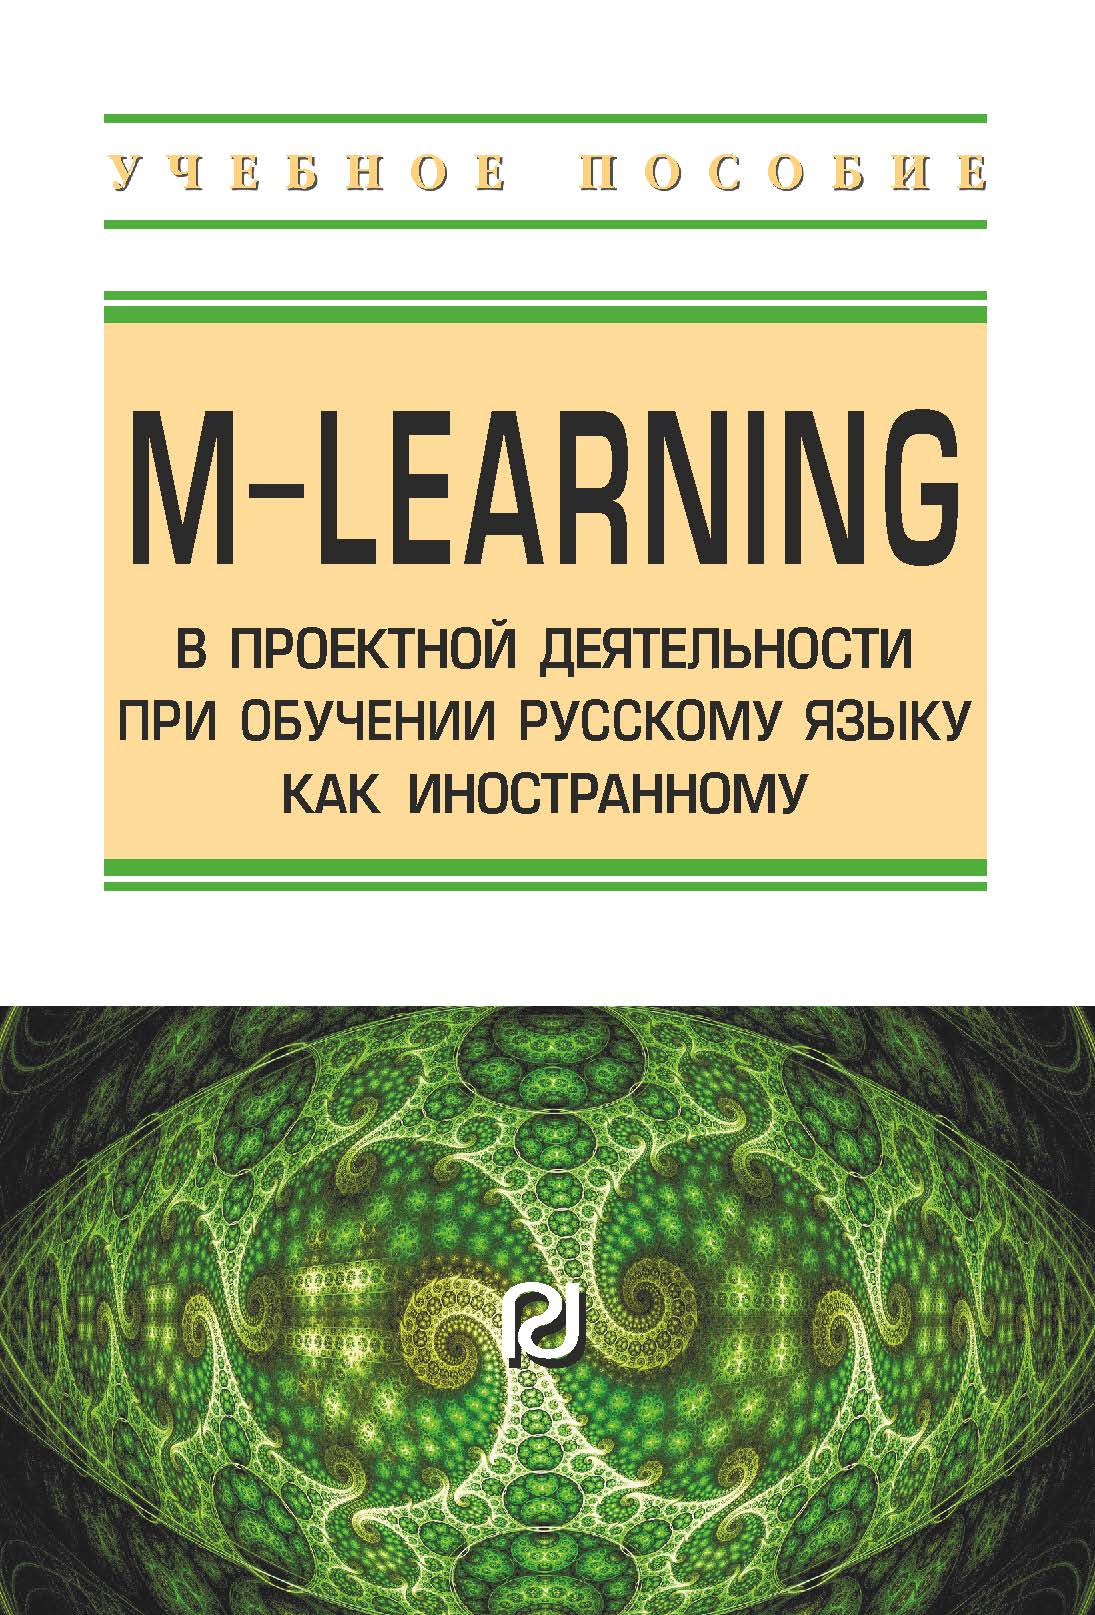             M-learning в проектной деятельности при обучении русскому языку как иностранному
    